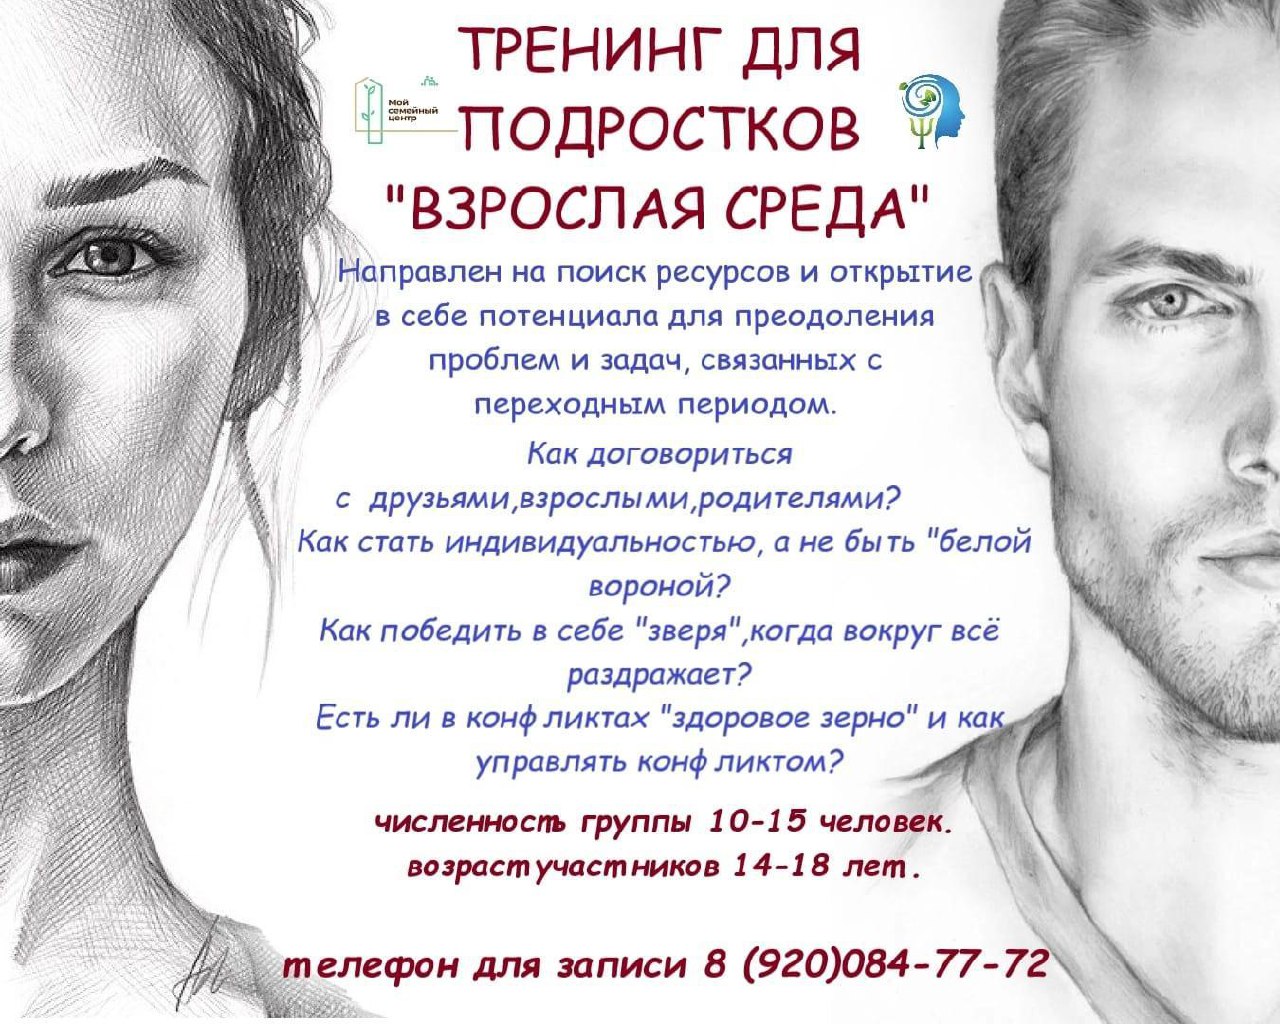 Семейный МФЦ города Ливны приглашает посетить тренинг для подростков, который состоится 12 июля